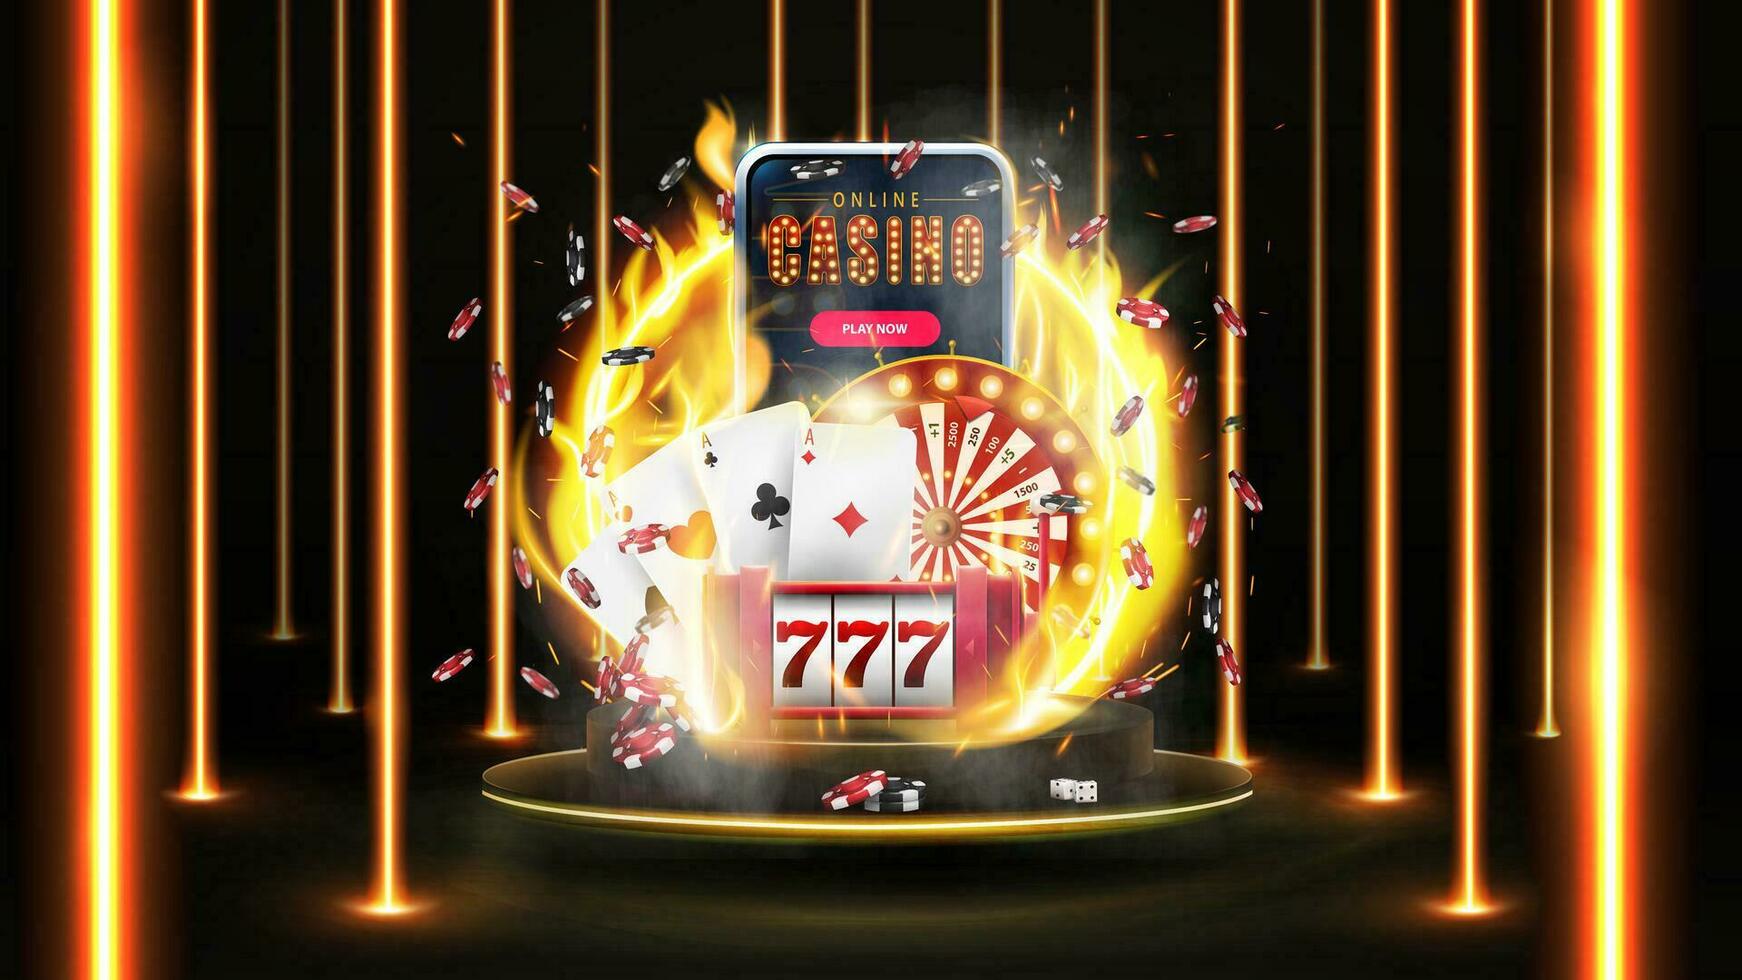 uppkopplad kasino, baner med smartphone, kasino spår maskin, kasino roulett, spelar kort och poker pommes frites på guld podium i mörk scen med vägg av linje vertikal guld neon lampor runt om vektor